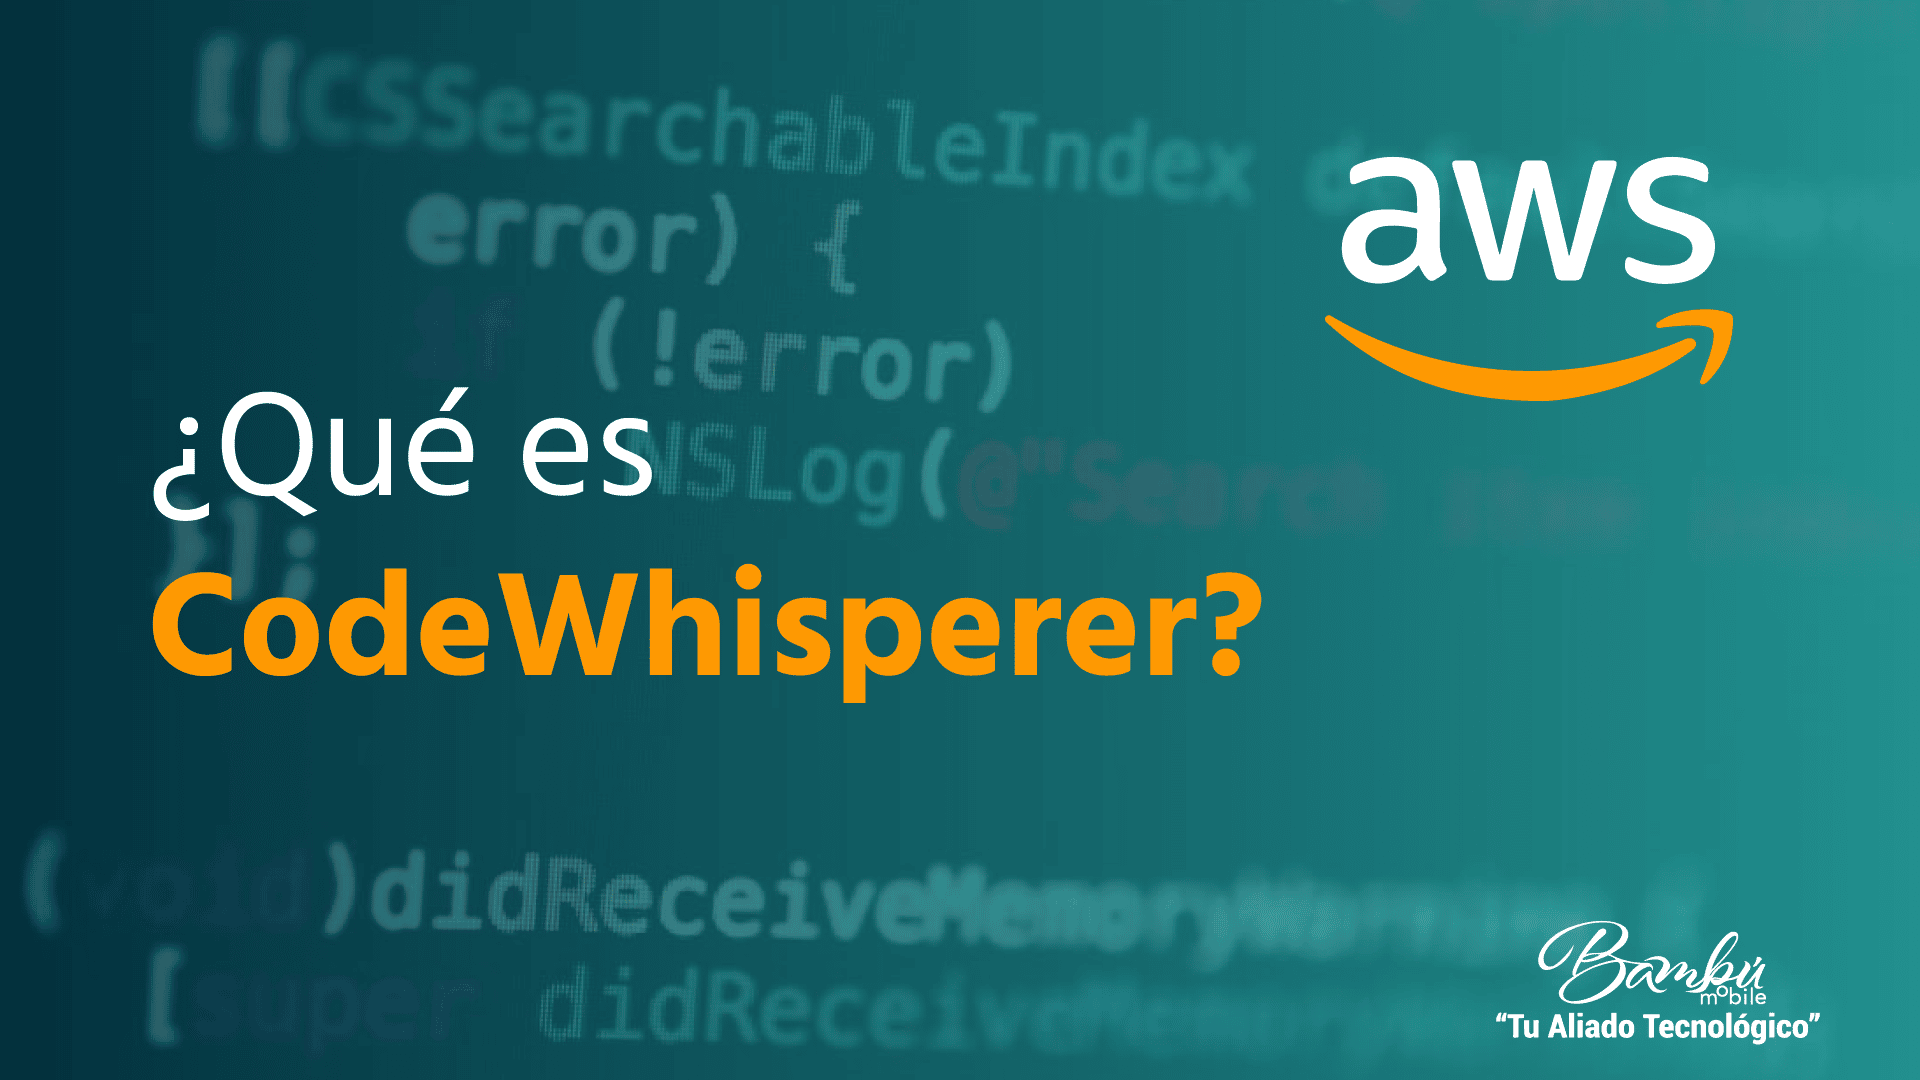 ¿Qué es CodeWhisperer? El GitHub de Amazon